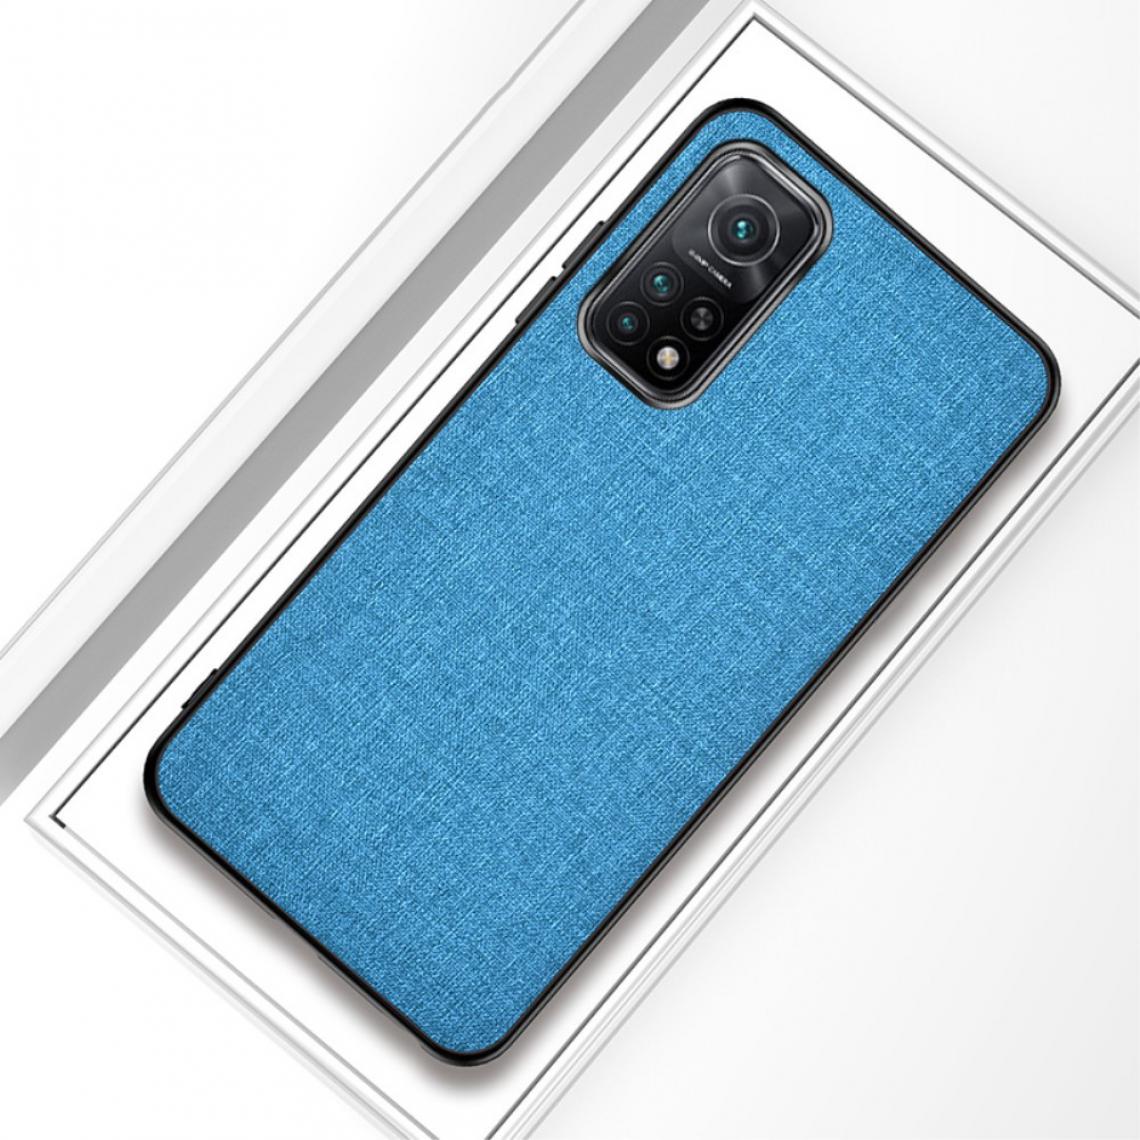 Other - Coque en TPU tissu enduit bleu ciel pour votre Xiaomi Mi 10T 5G/Mi 10T Pro 5G/Redmi K30S - Coque, étui smartphone